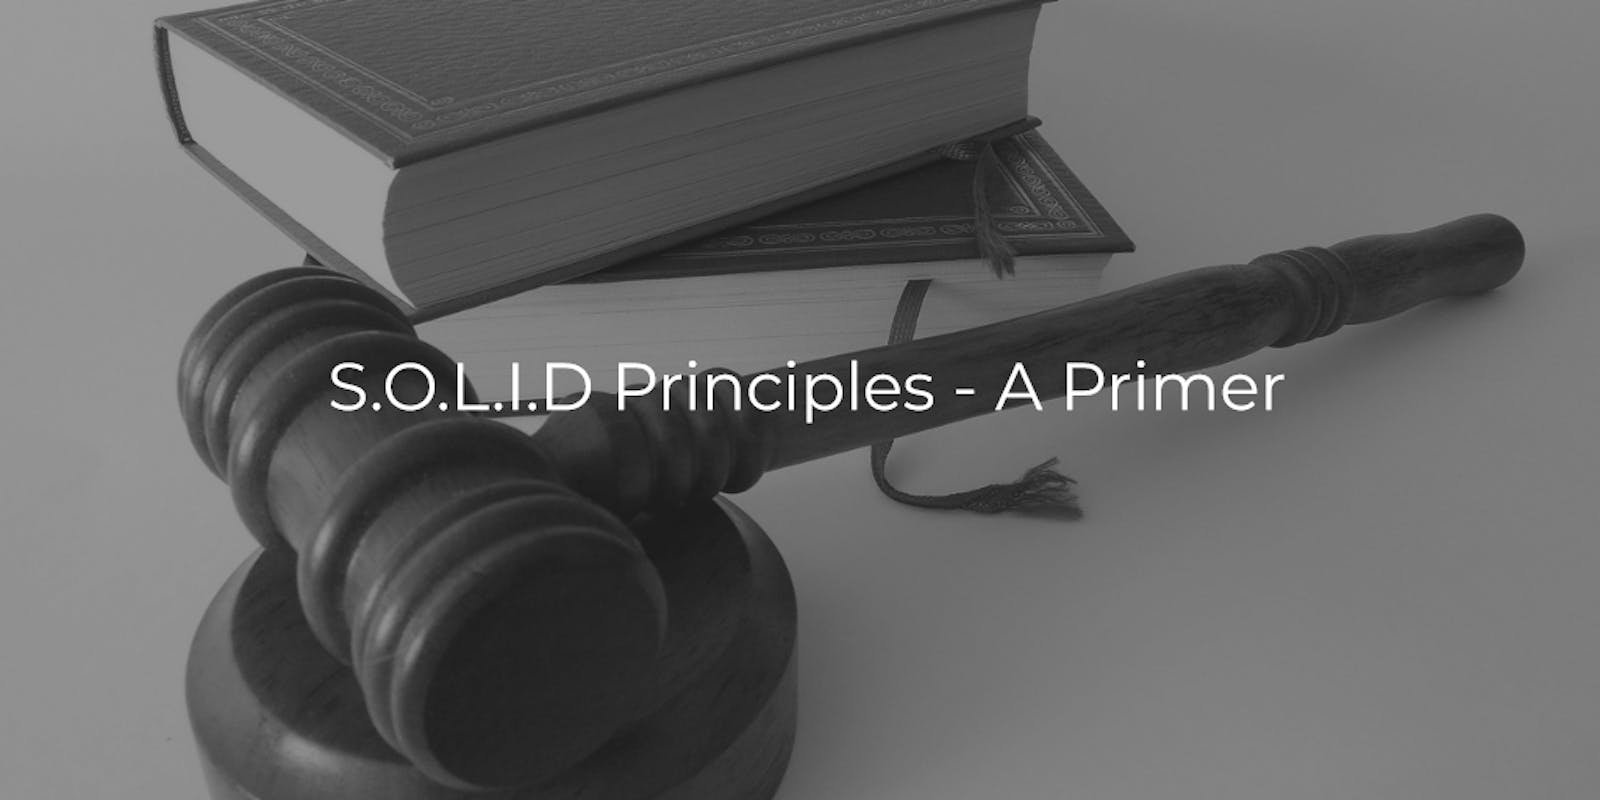 S.O.L.I.D Principles - A Primer